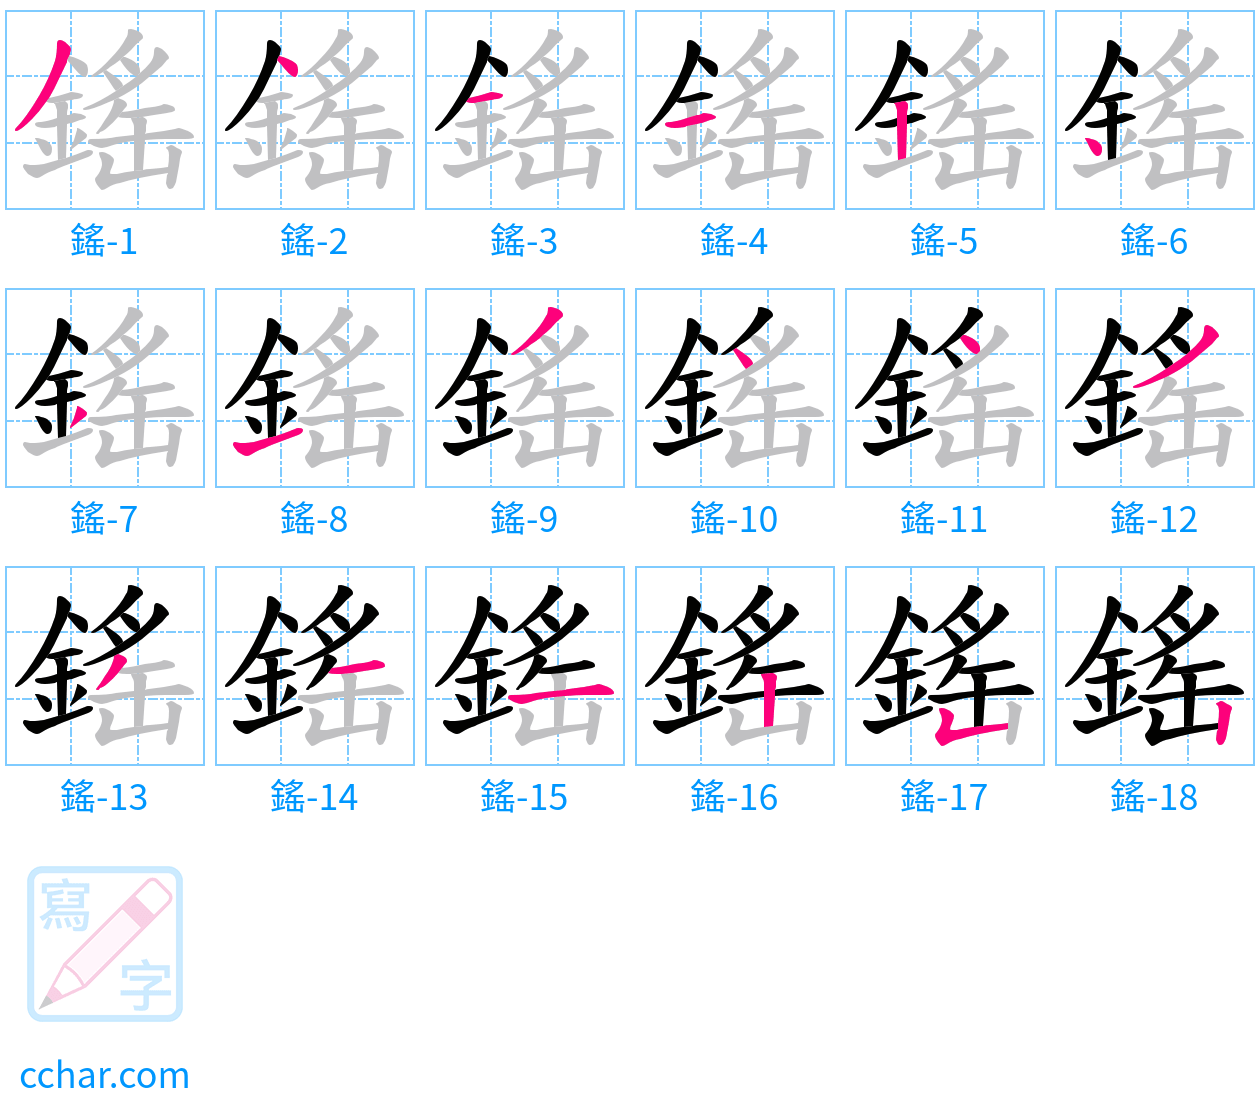 鎐 stroke order step-by-step diagram